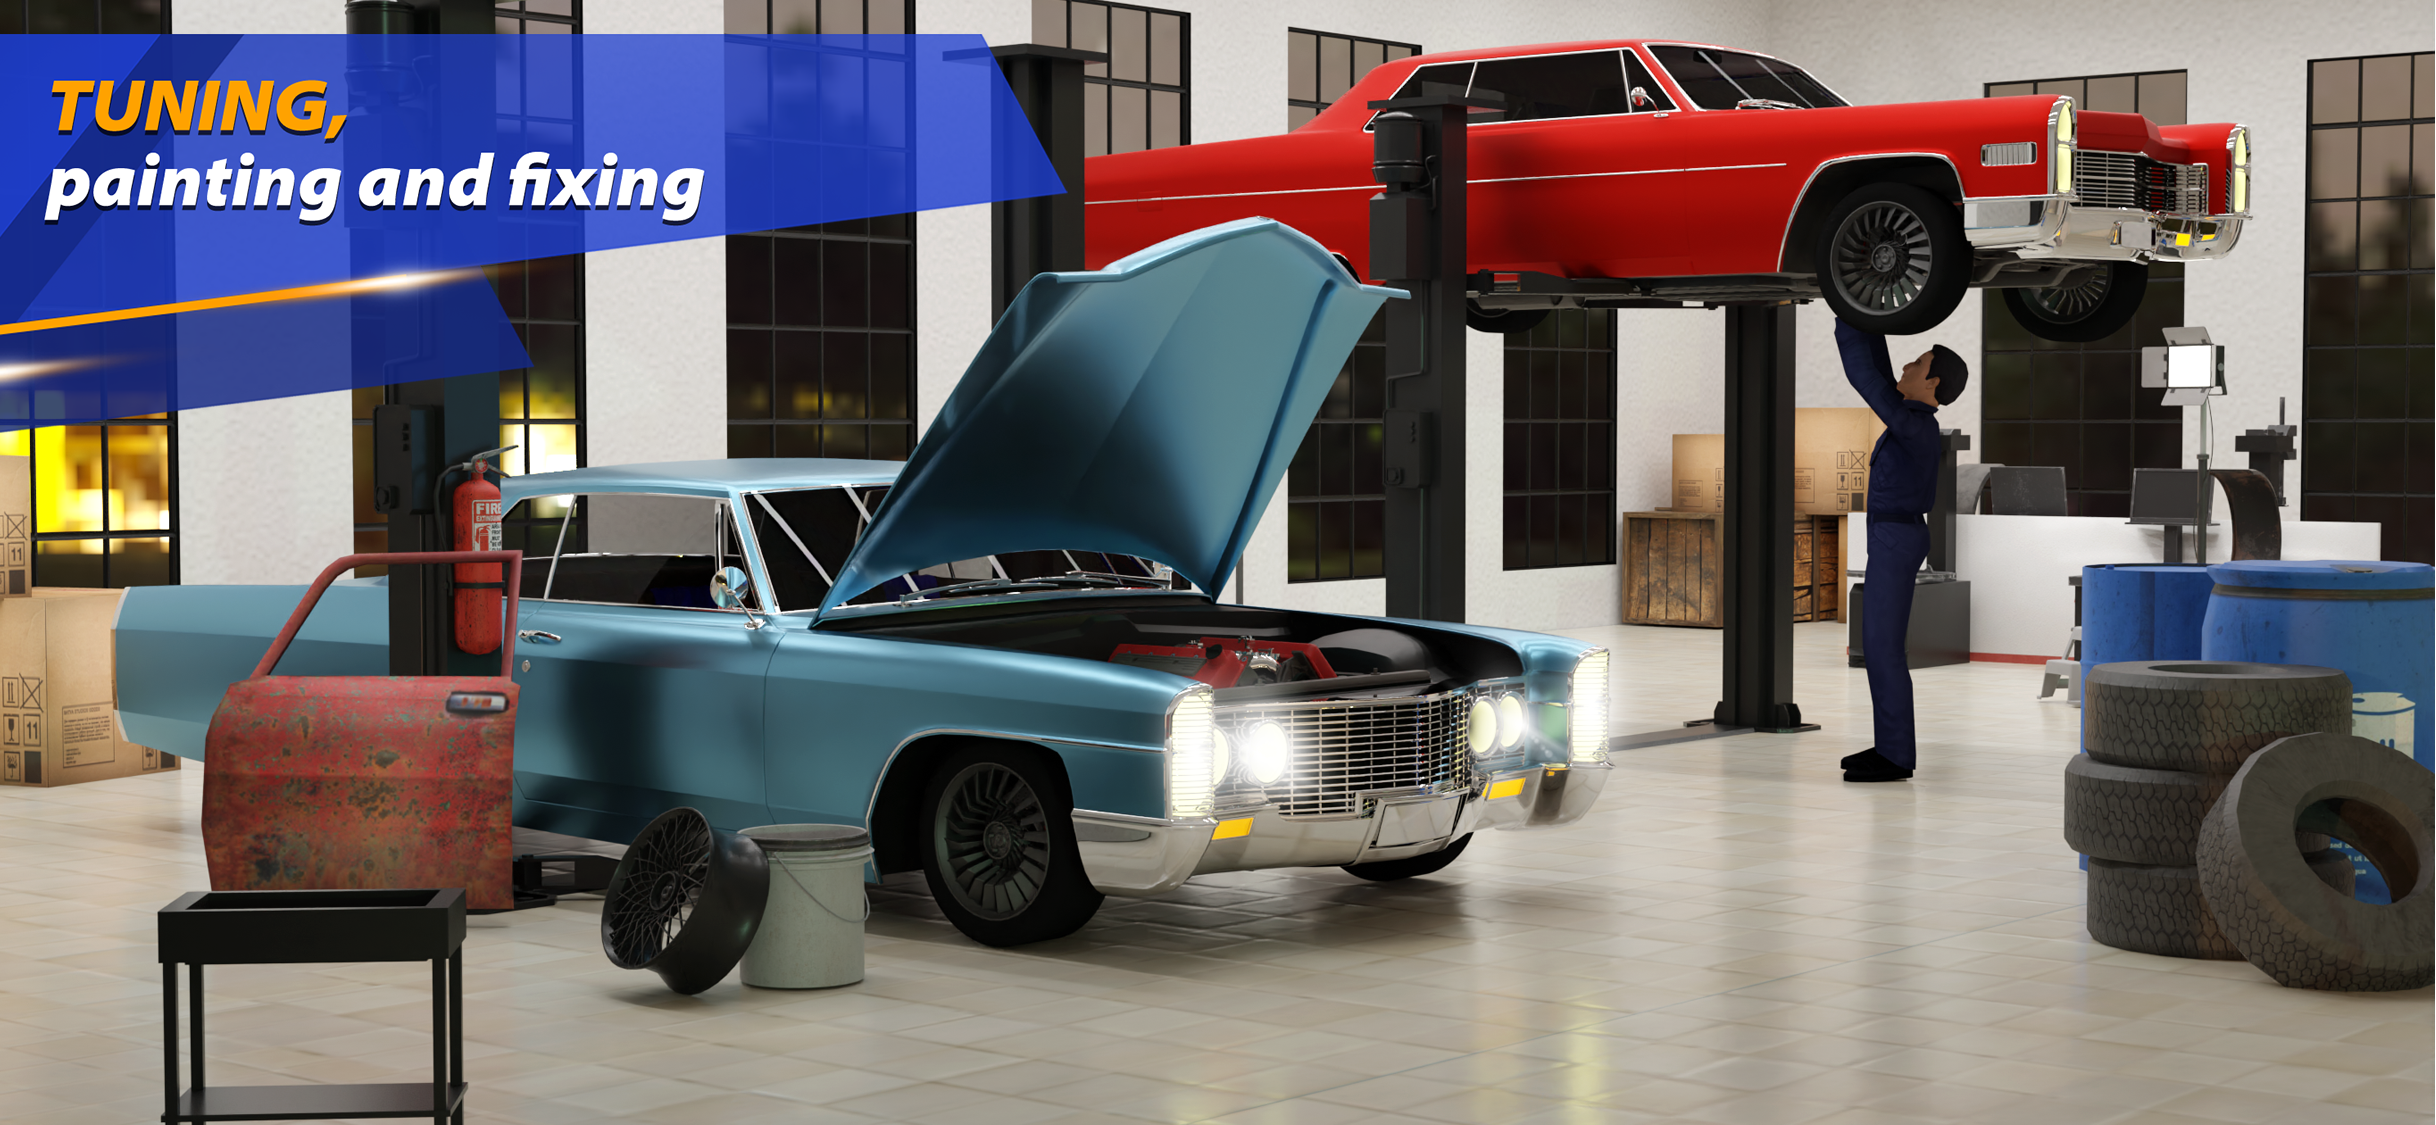 Screenshot of Car Sales & Drive Simulator 24